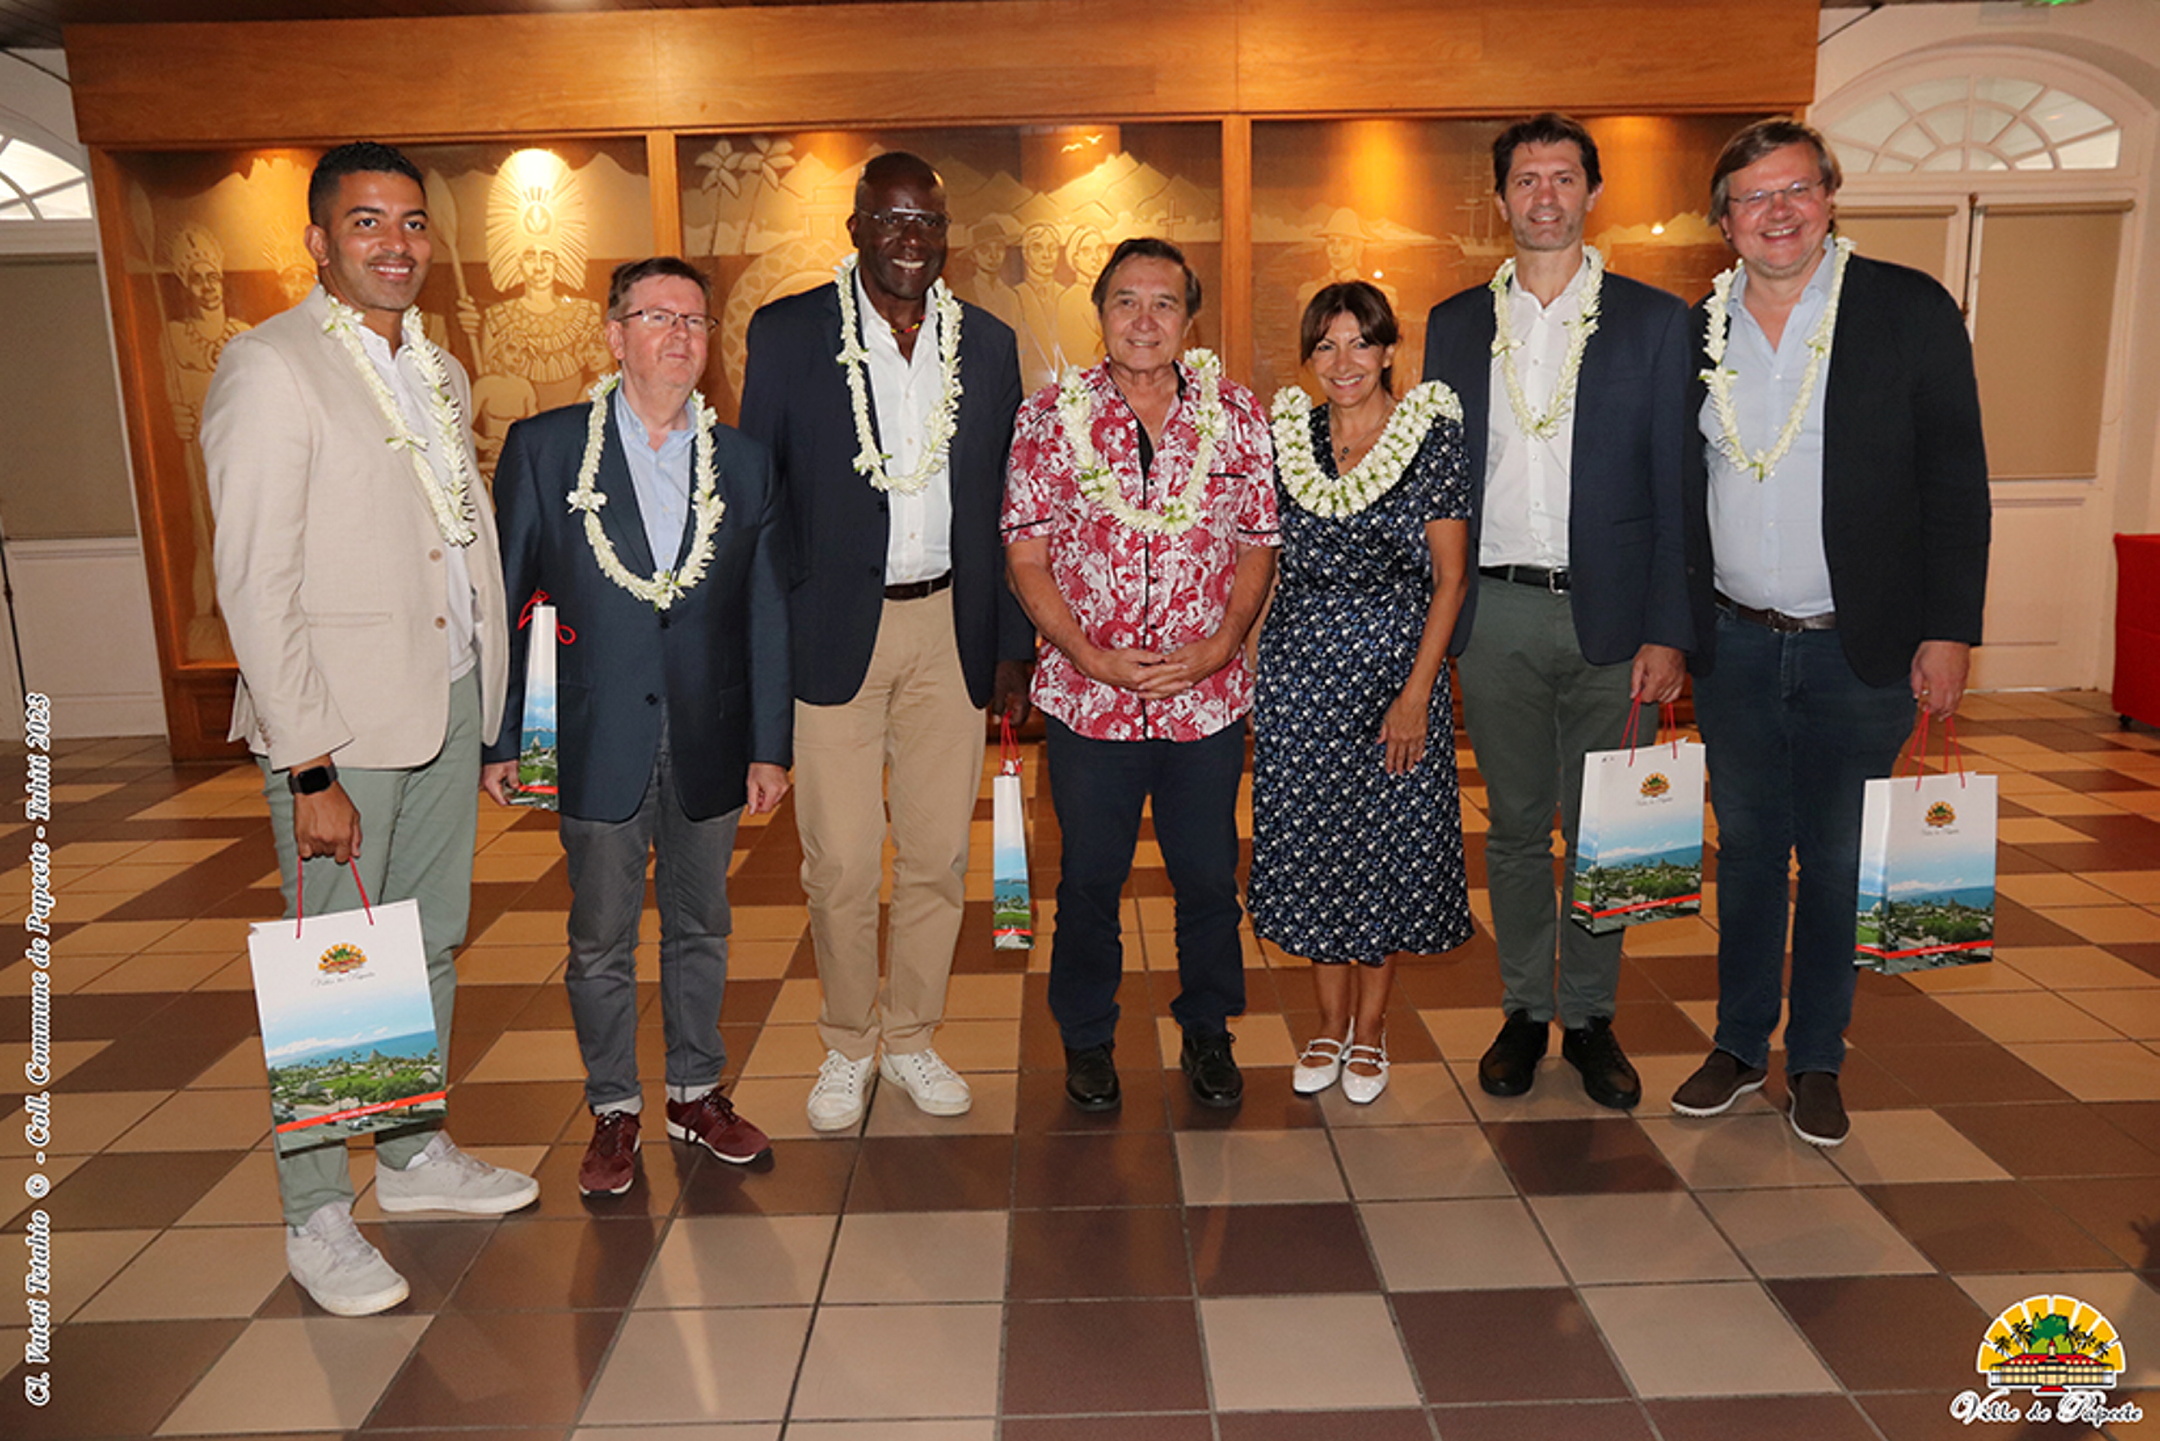 Anne Hidalgo et la délégation parisienne en Polynésie française, le 20 octobre avec le maire de Papeete Michel Buillard au centre. Ville de Papeete